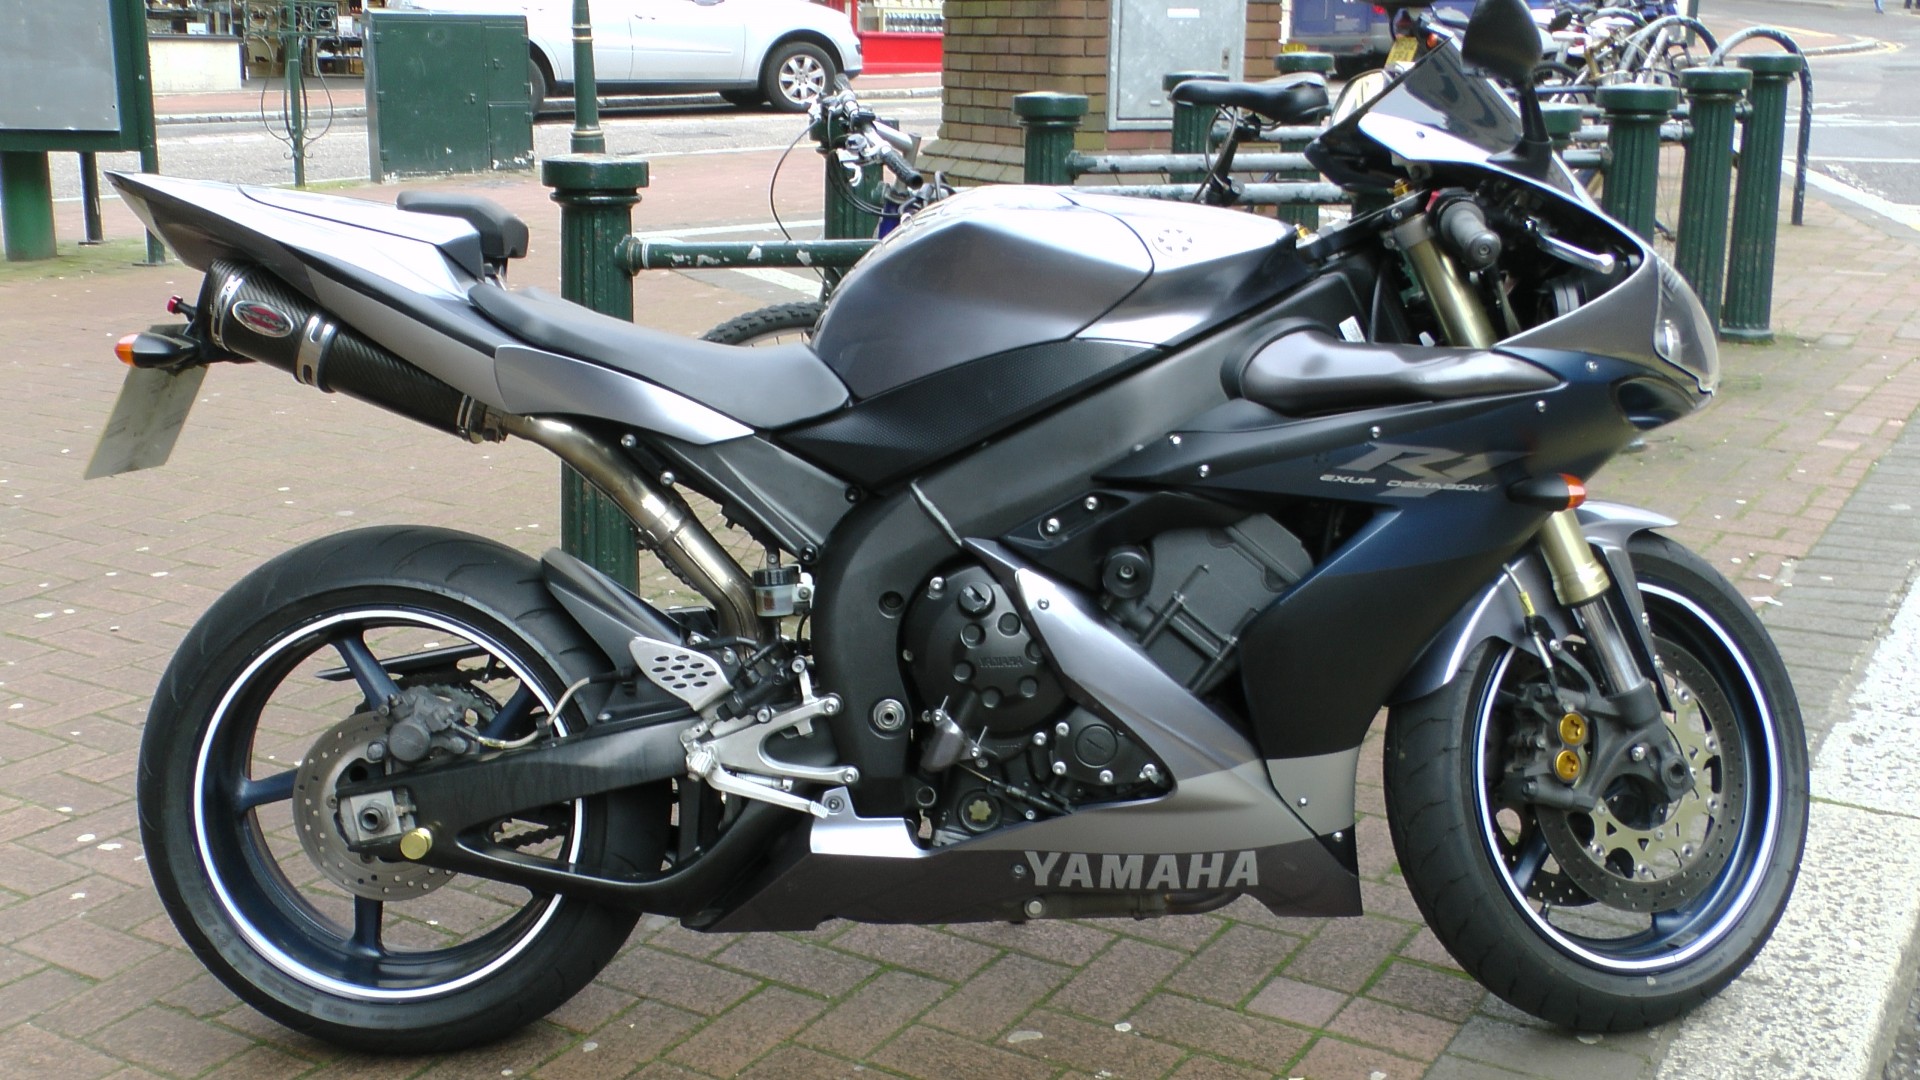 yamaha motorcycle motorbike free photo